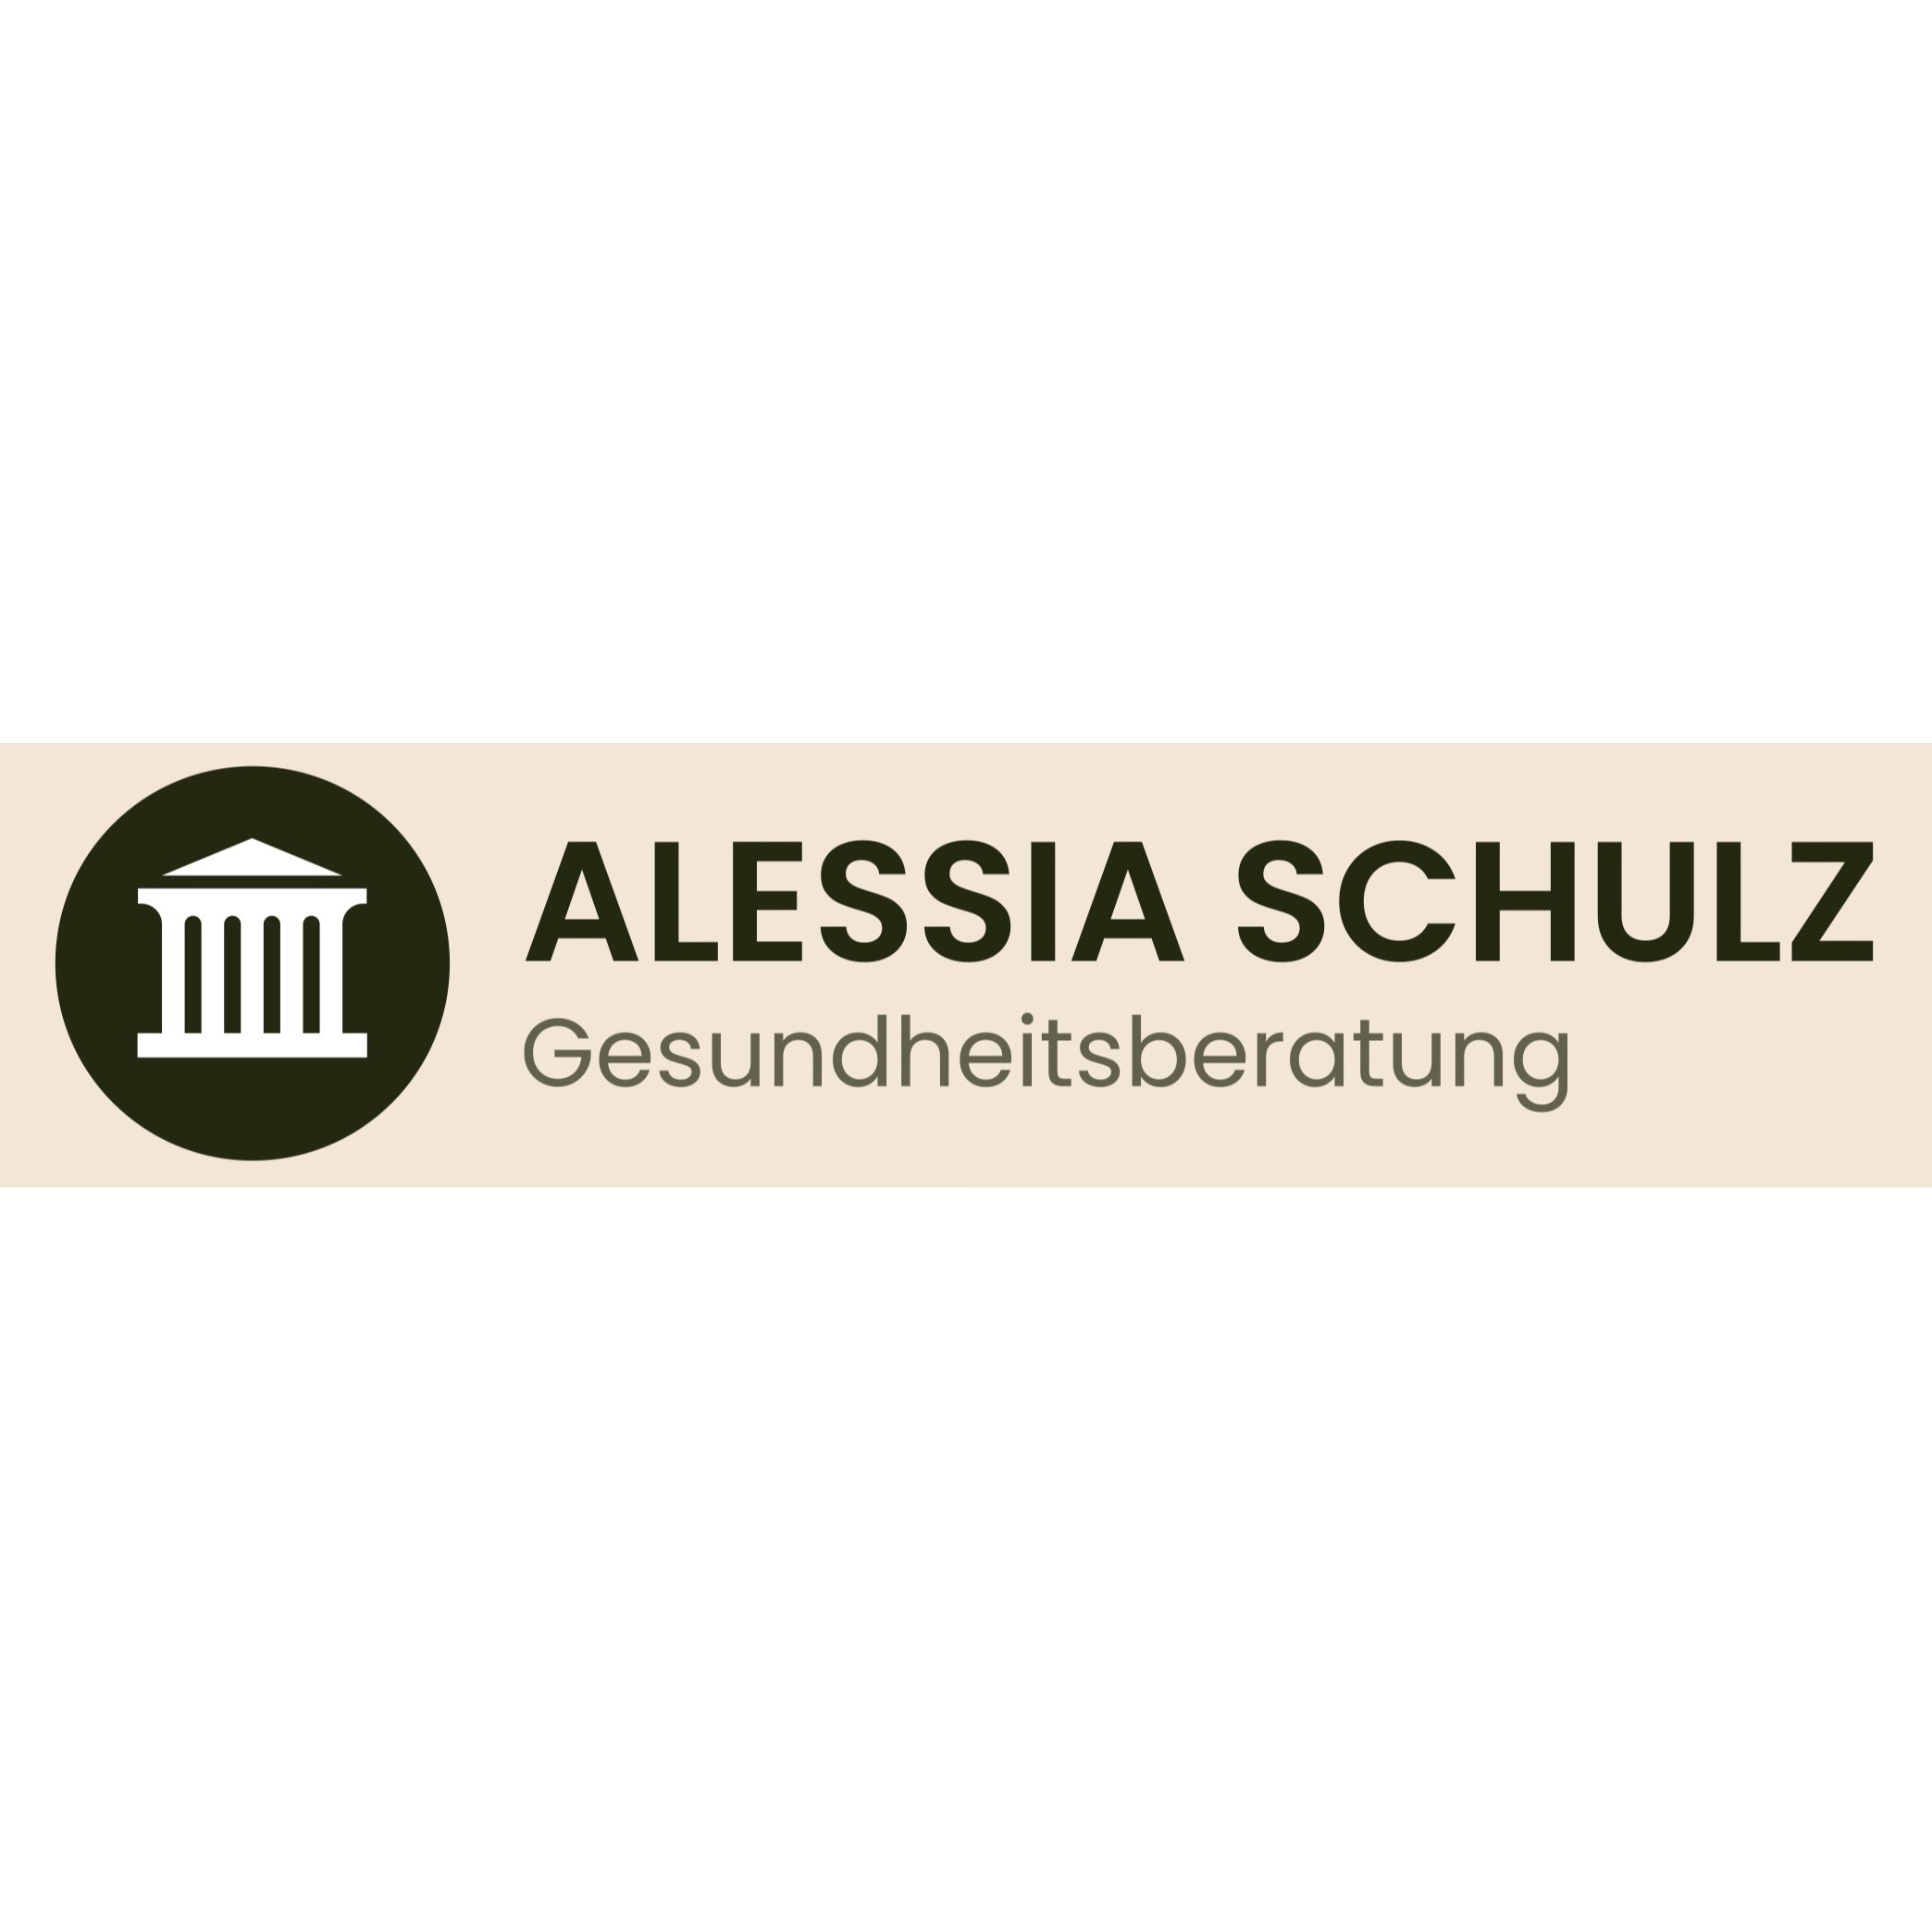 Alessia Schulz Gesundheits-und Ernährungsberatung Logo